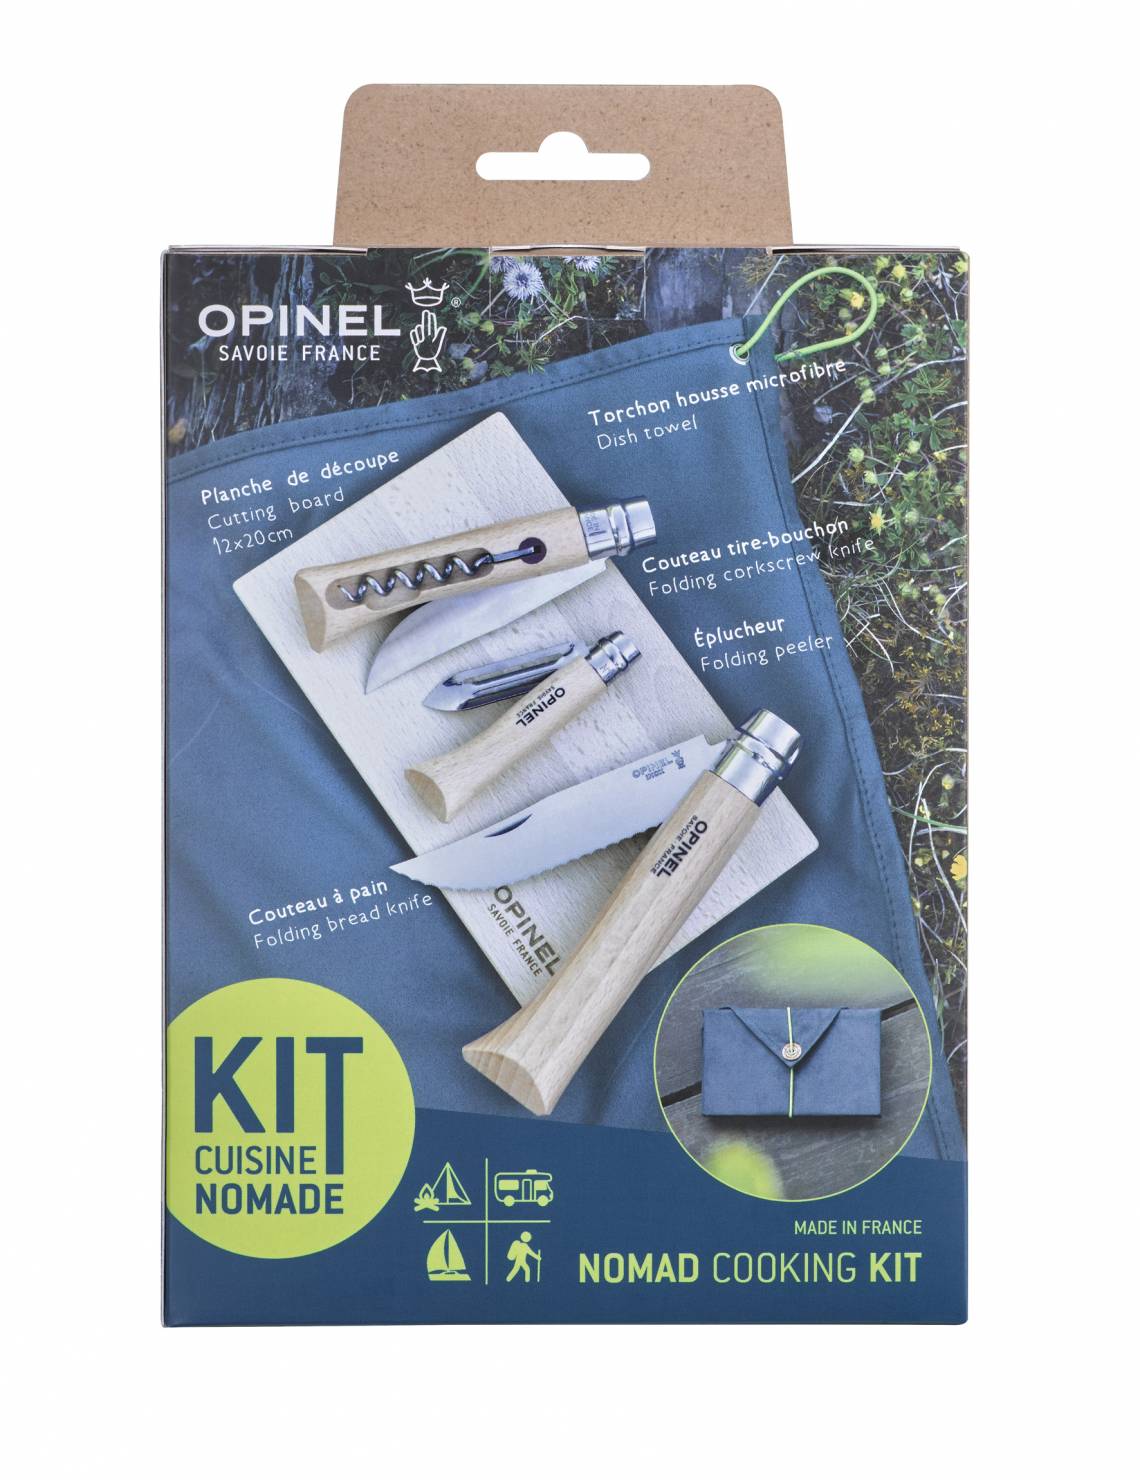 Opinel Set Kit Nomad Verpackung Rückseite